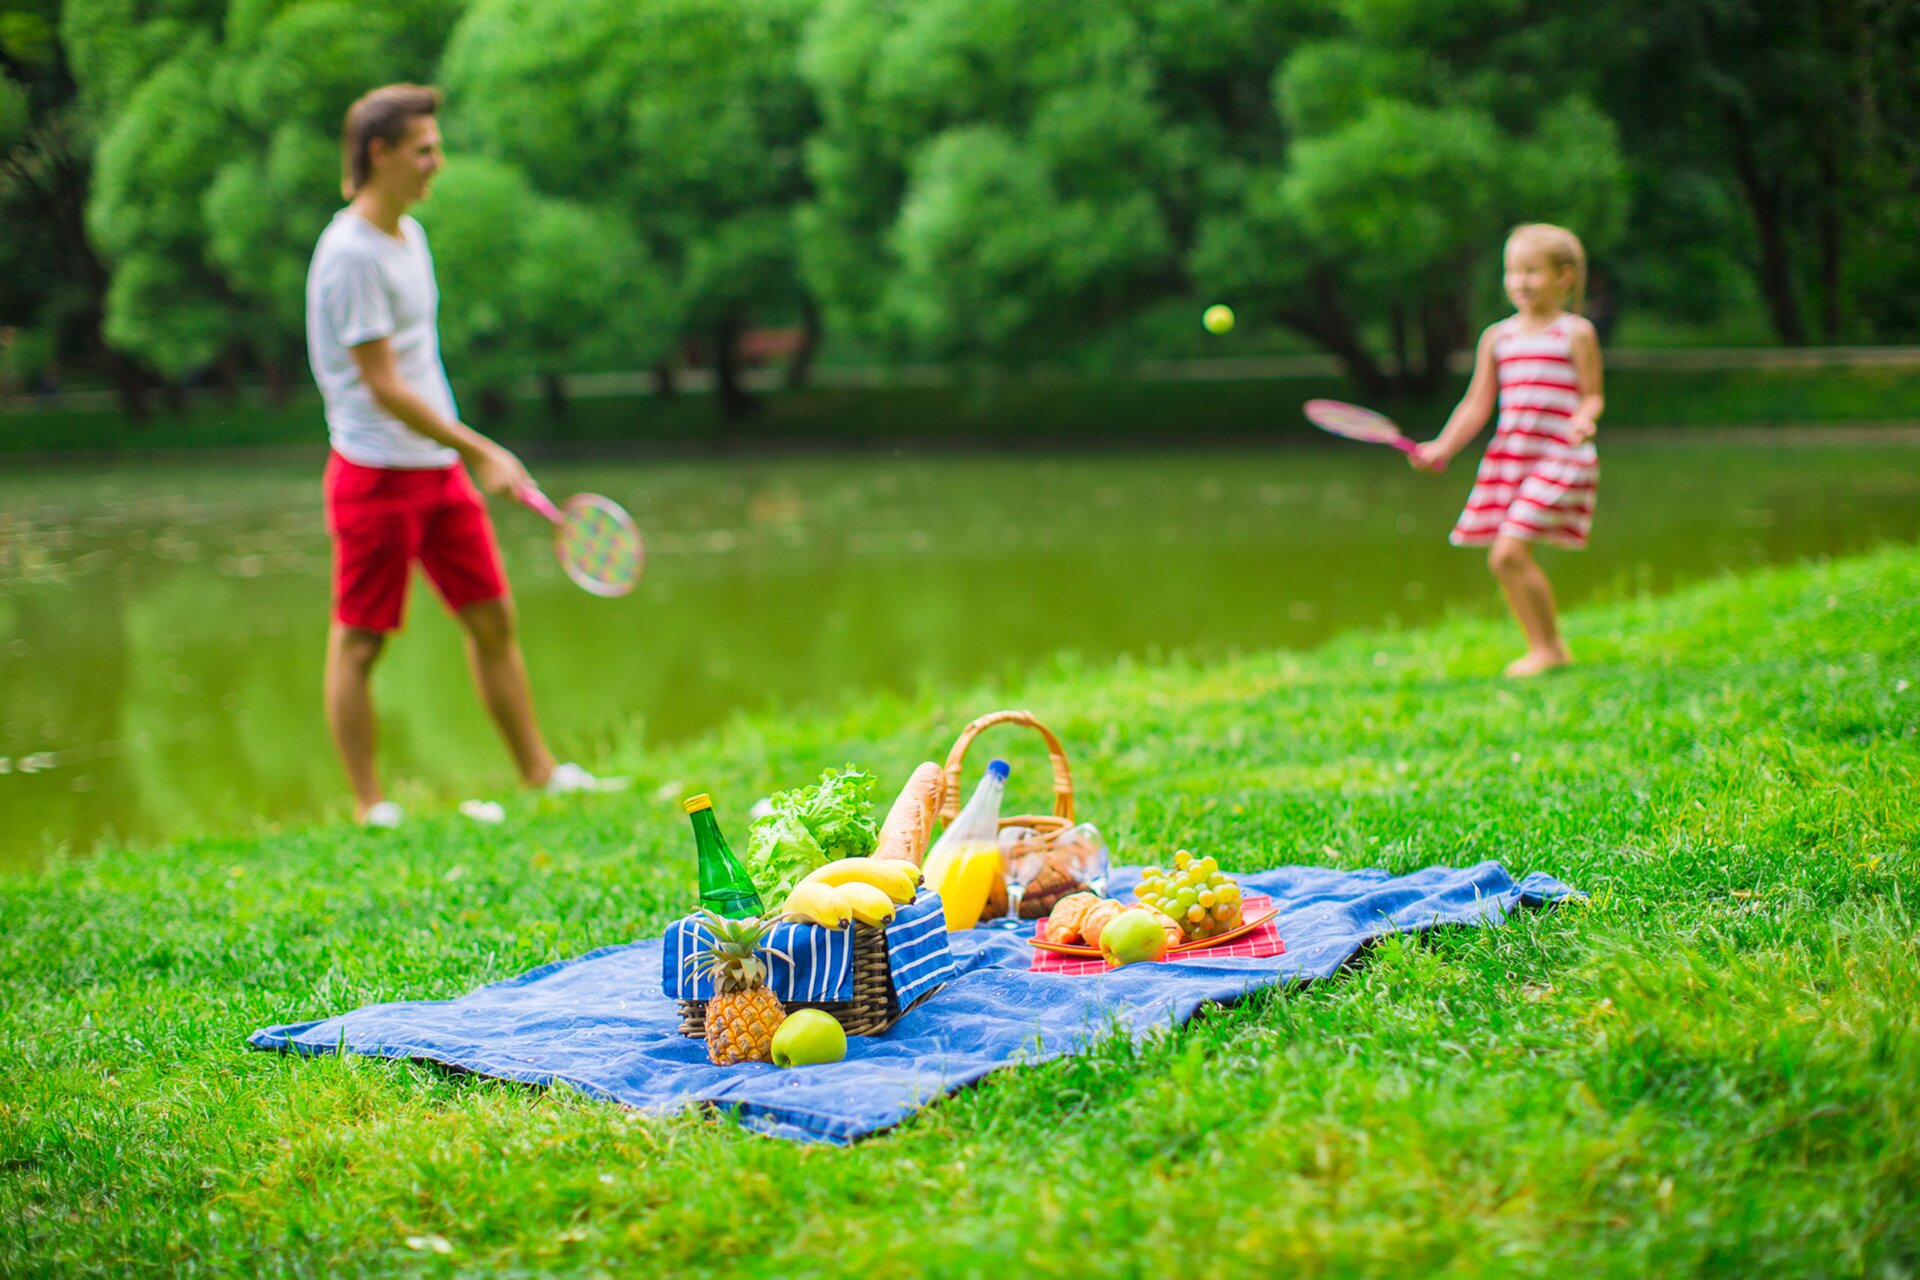 Fotografia przedstawia dziewczynkę z bratem lub tatą podczas aktywnego wypoczynku na łonie natury, połączonego z piknikiem. Na pierwszym tle koc z koszami piknikowymi wypełnionymi pożywieniem. Na drugim tle - toczy się gra, polegająca na odbijaniu piłki za pomocą paletek.